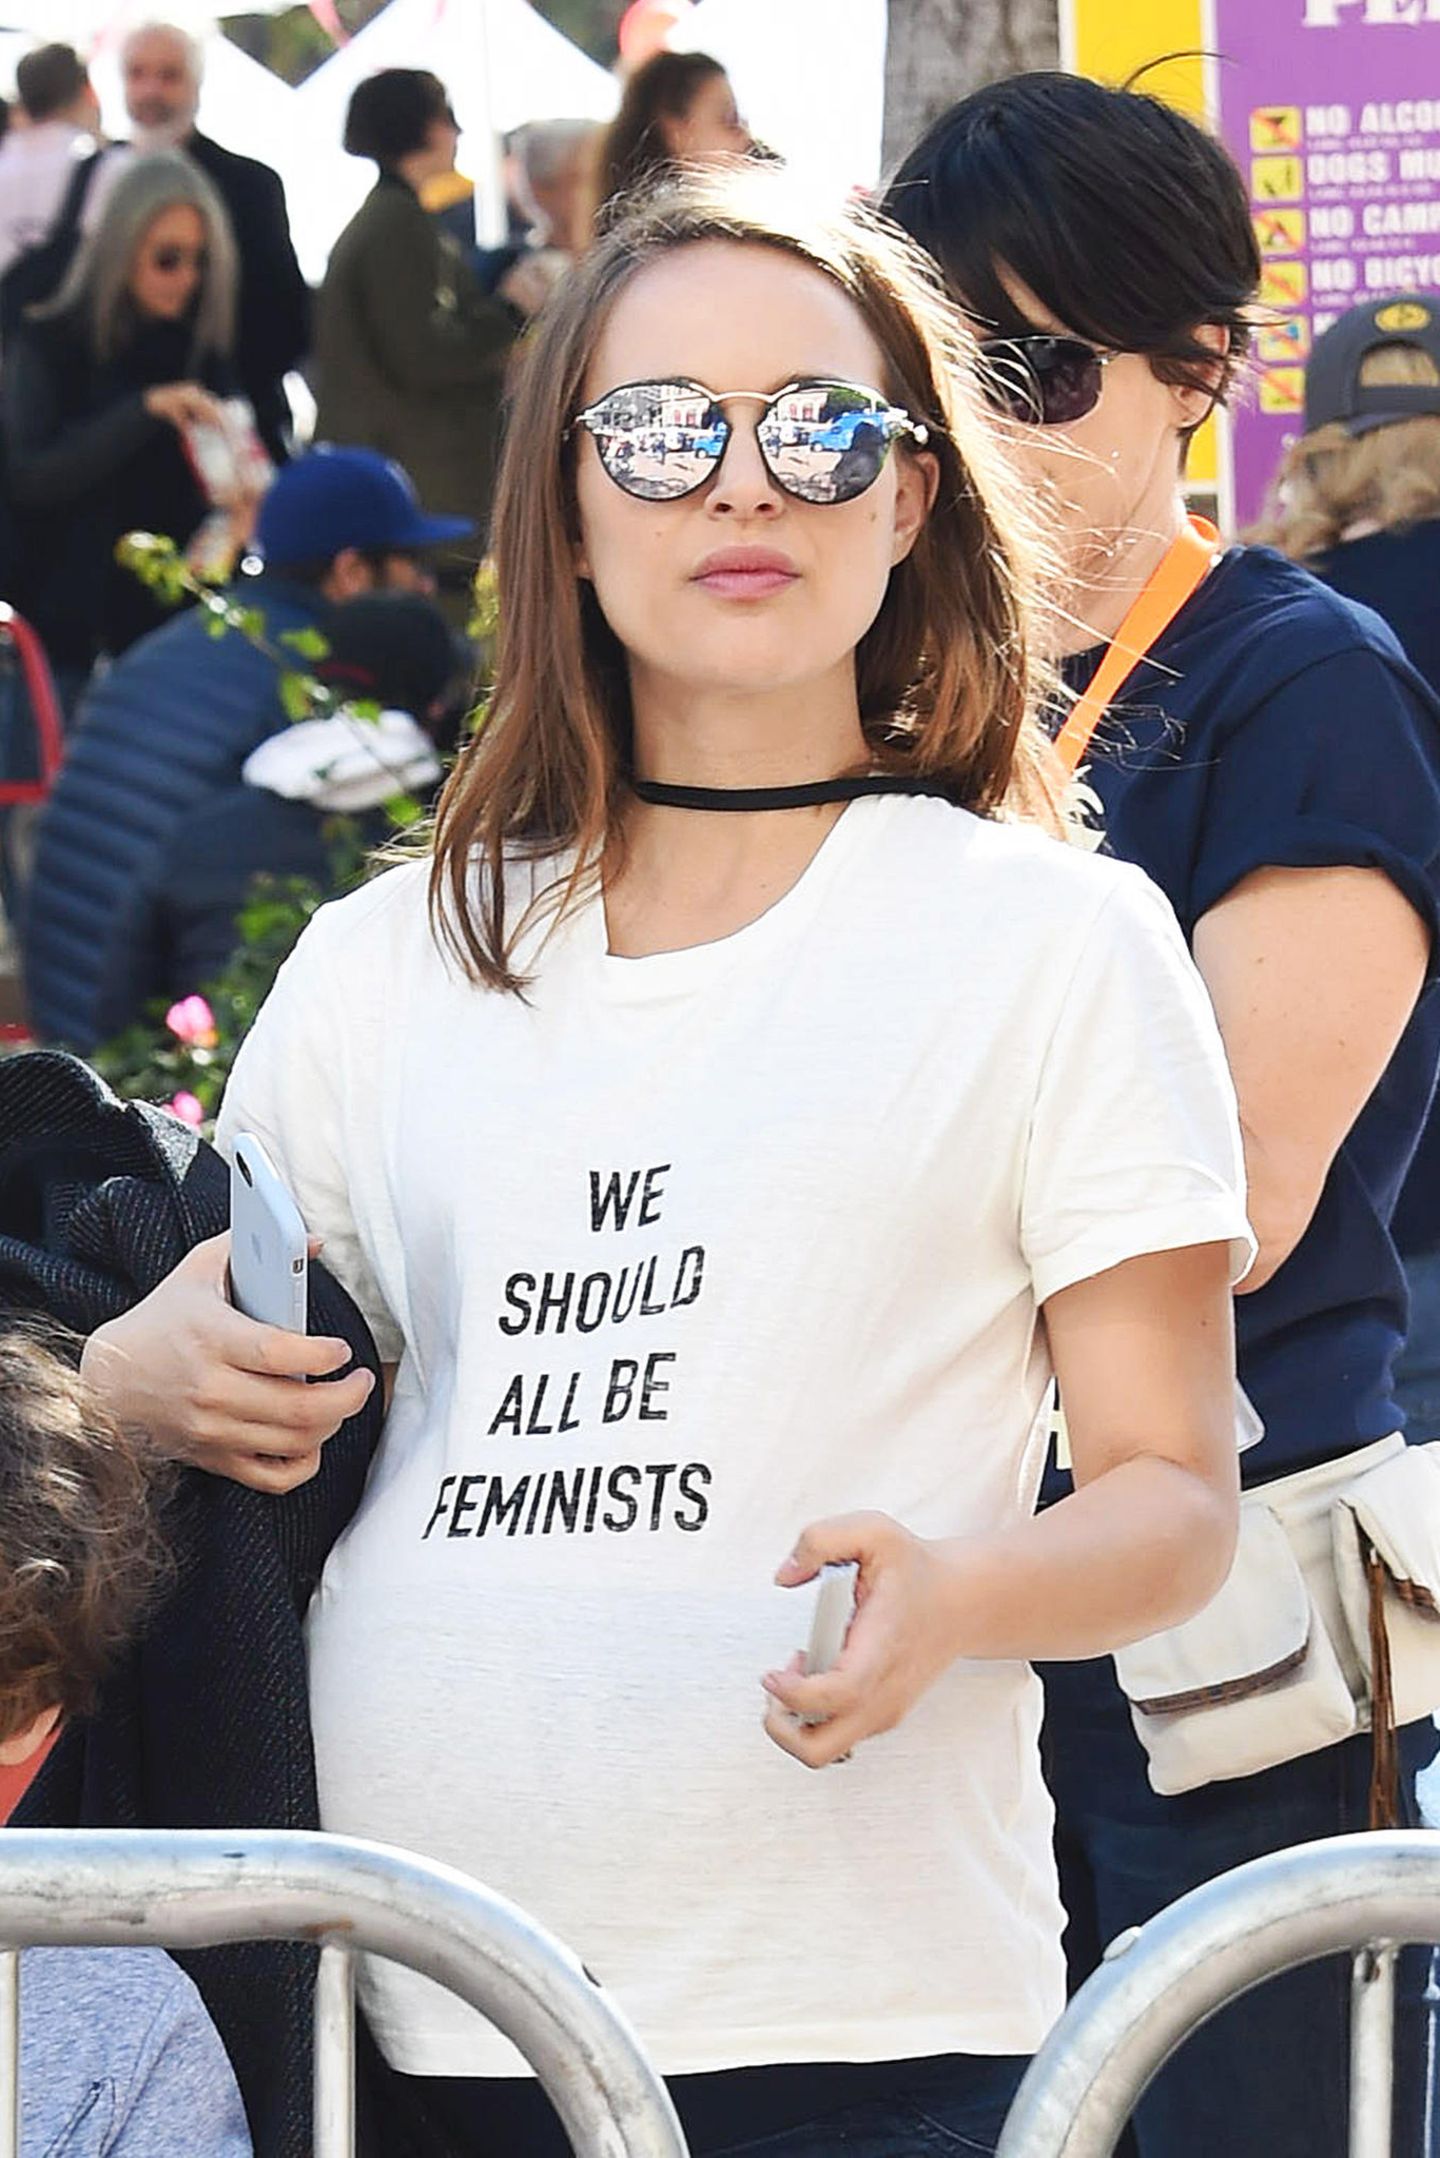 "Wir sollten alle Feministen sein" zeigt die zum Women's March im Januar noch schwangere Natalie Portman als Mott auf ihrem Shirt. Recht hat sie.